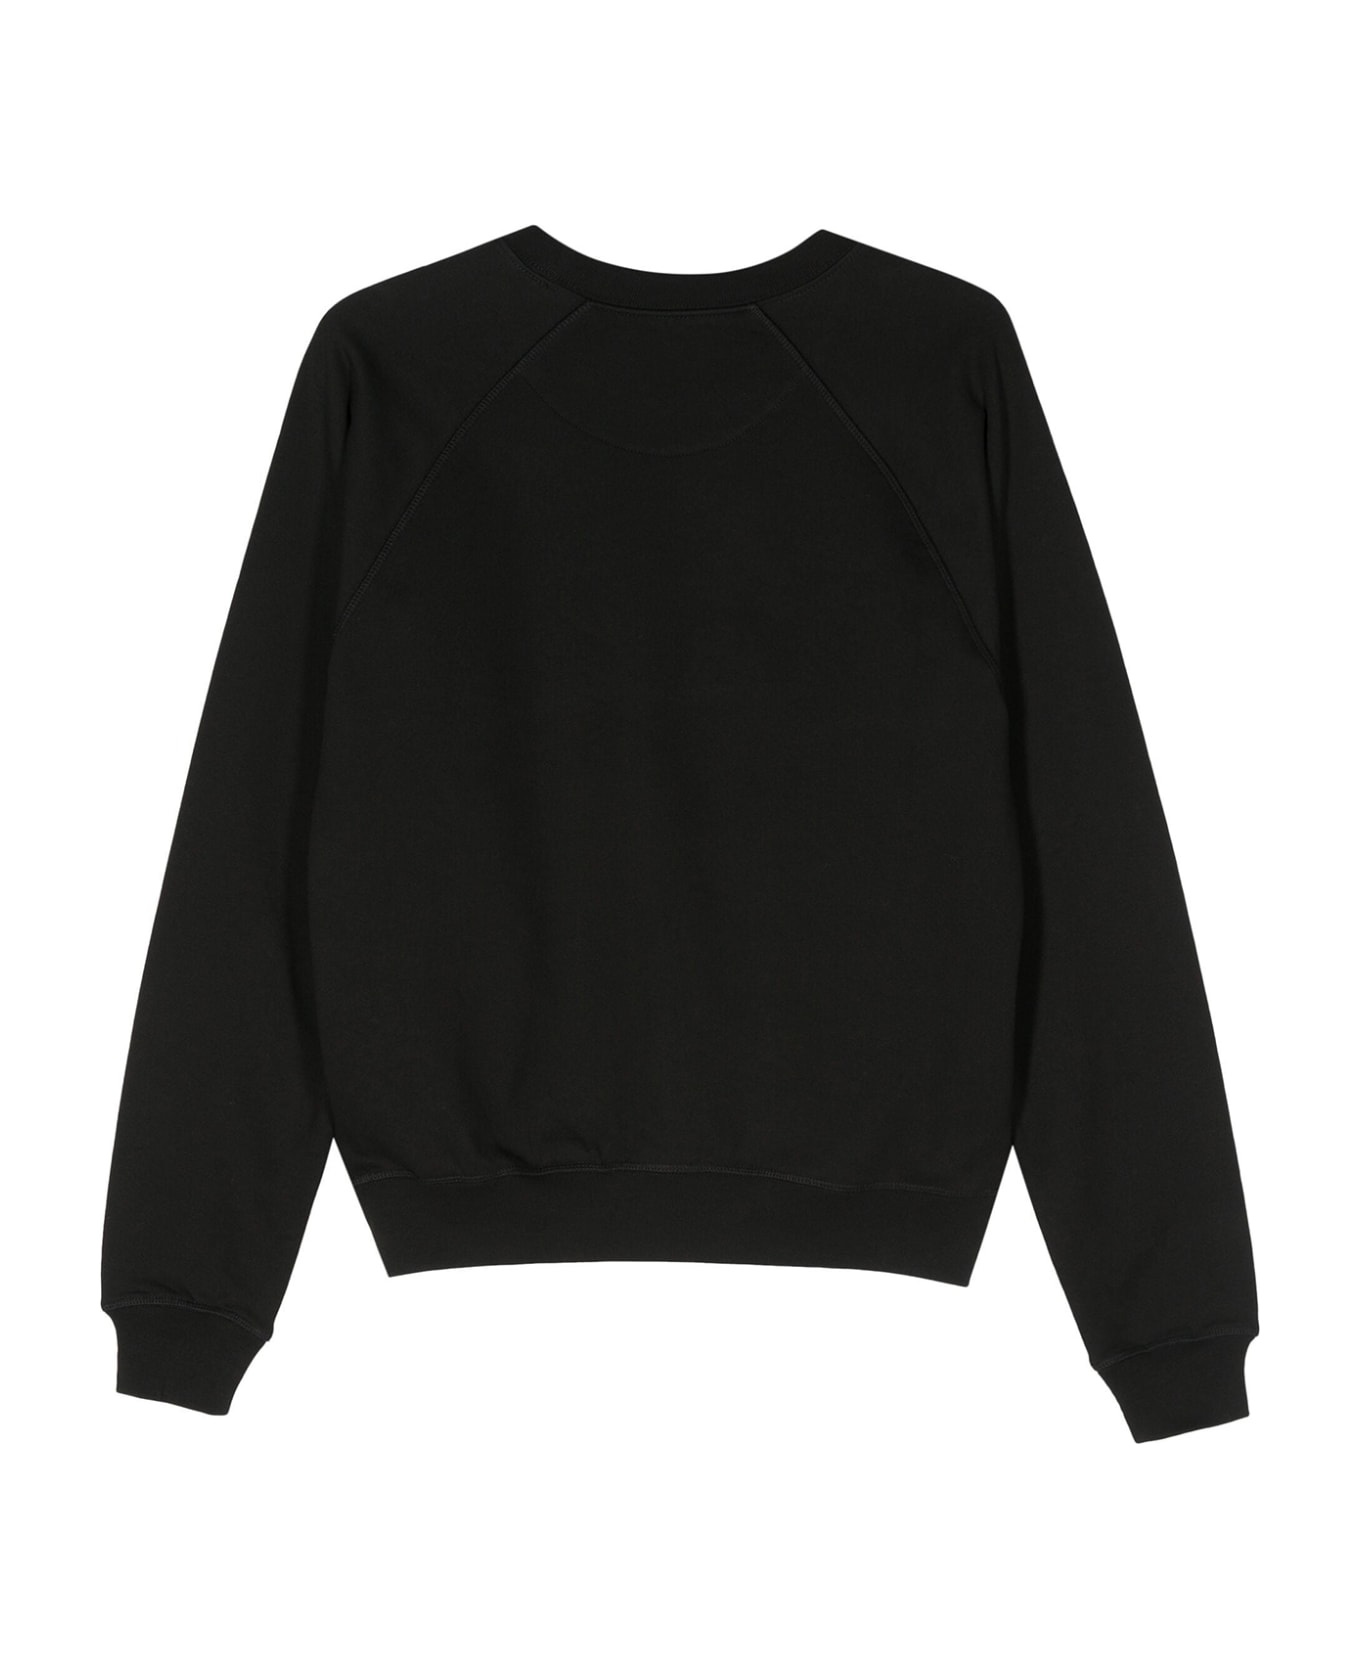 Vivienne Westwood Black Crewneck Sweatshirt With Print - BLACK